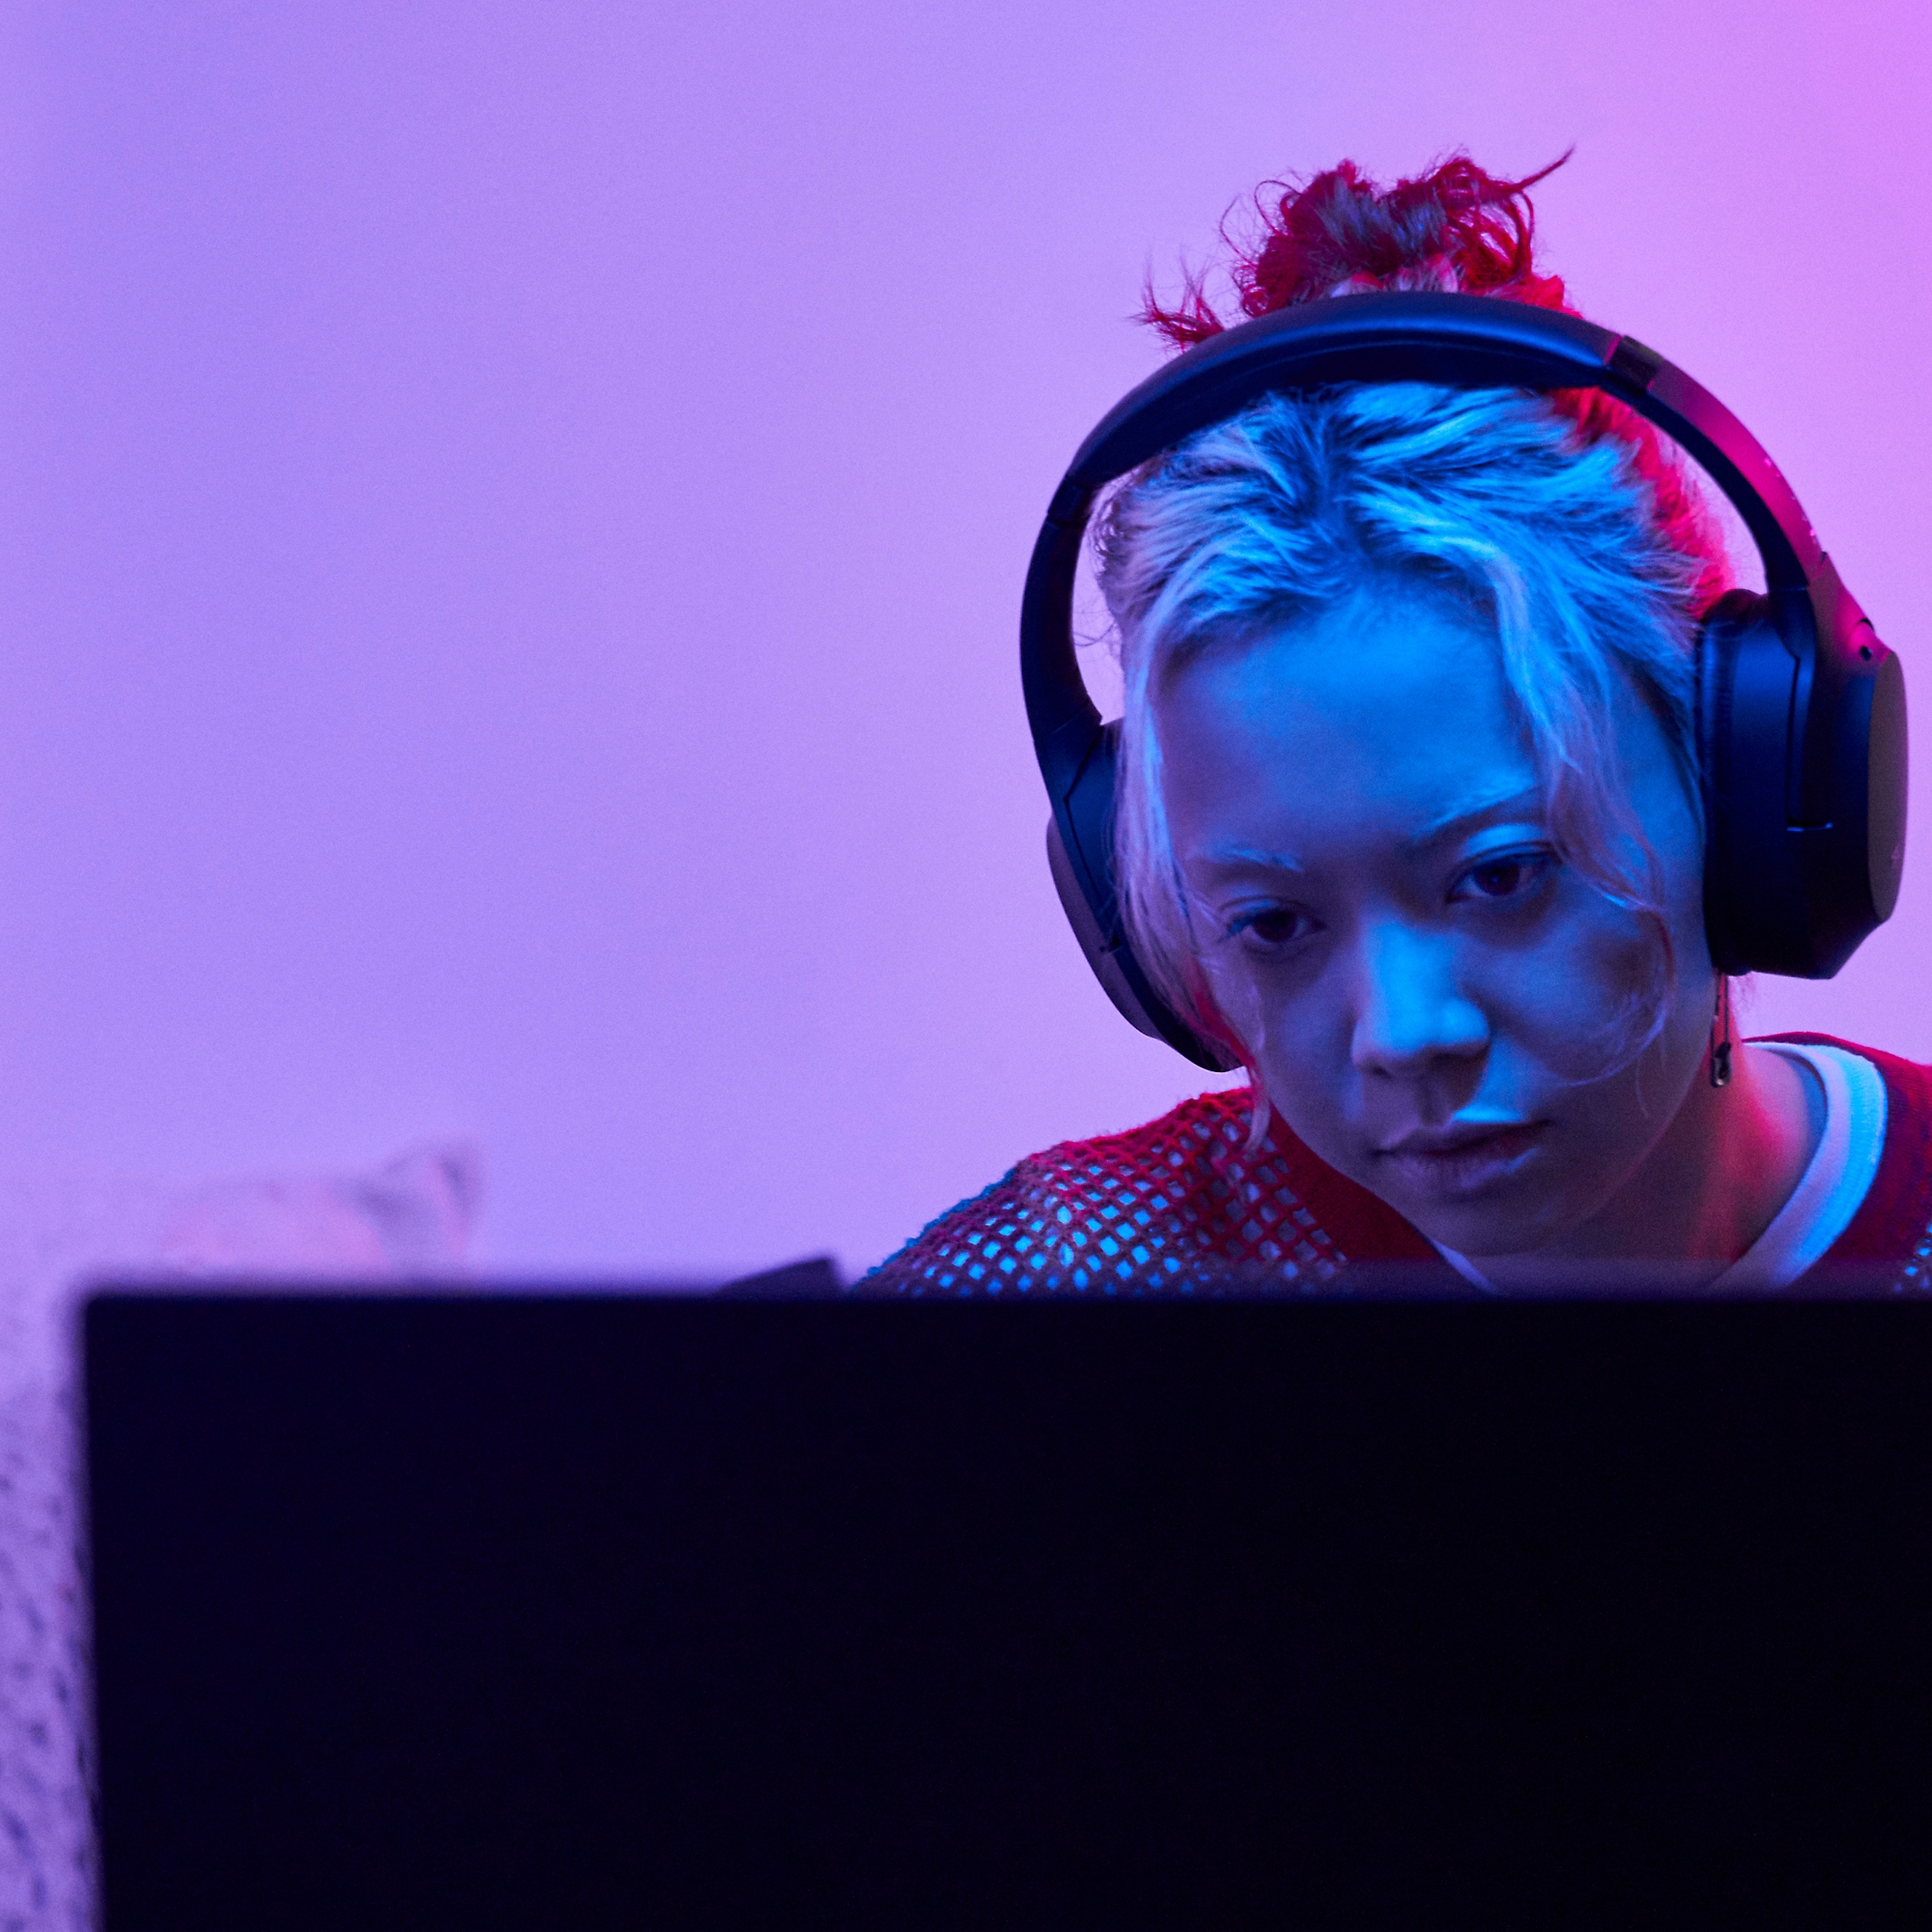 Kulaklık takan bir kadın bilgisayar karşısında oturuyor